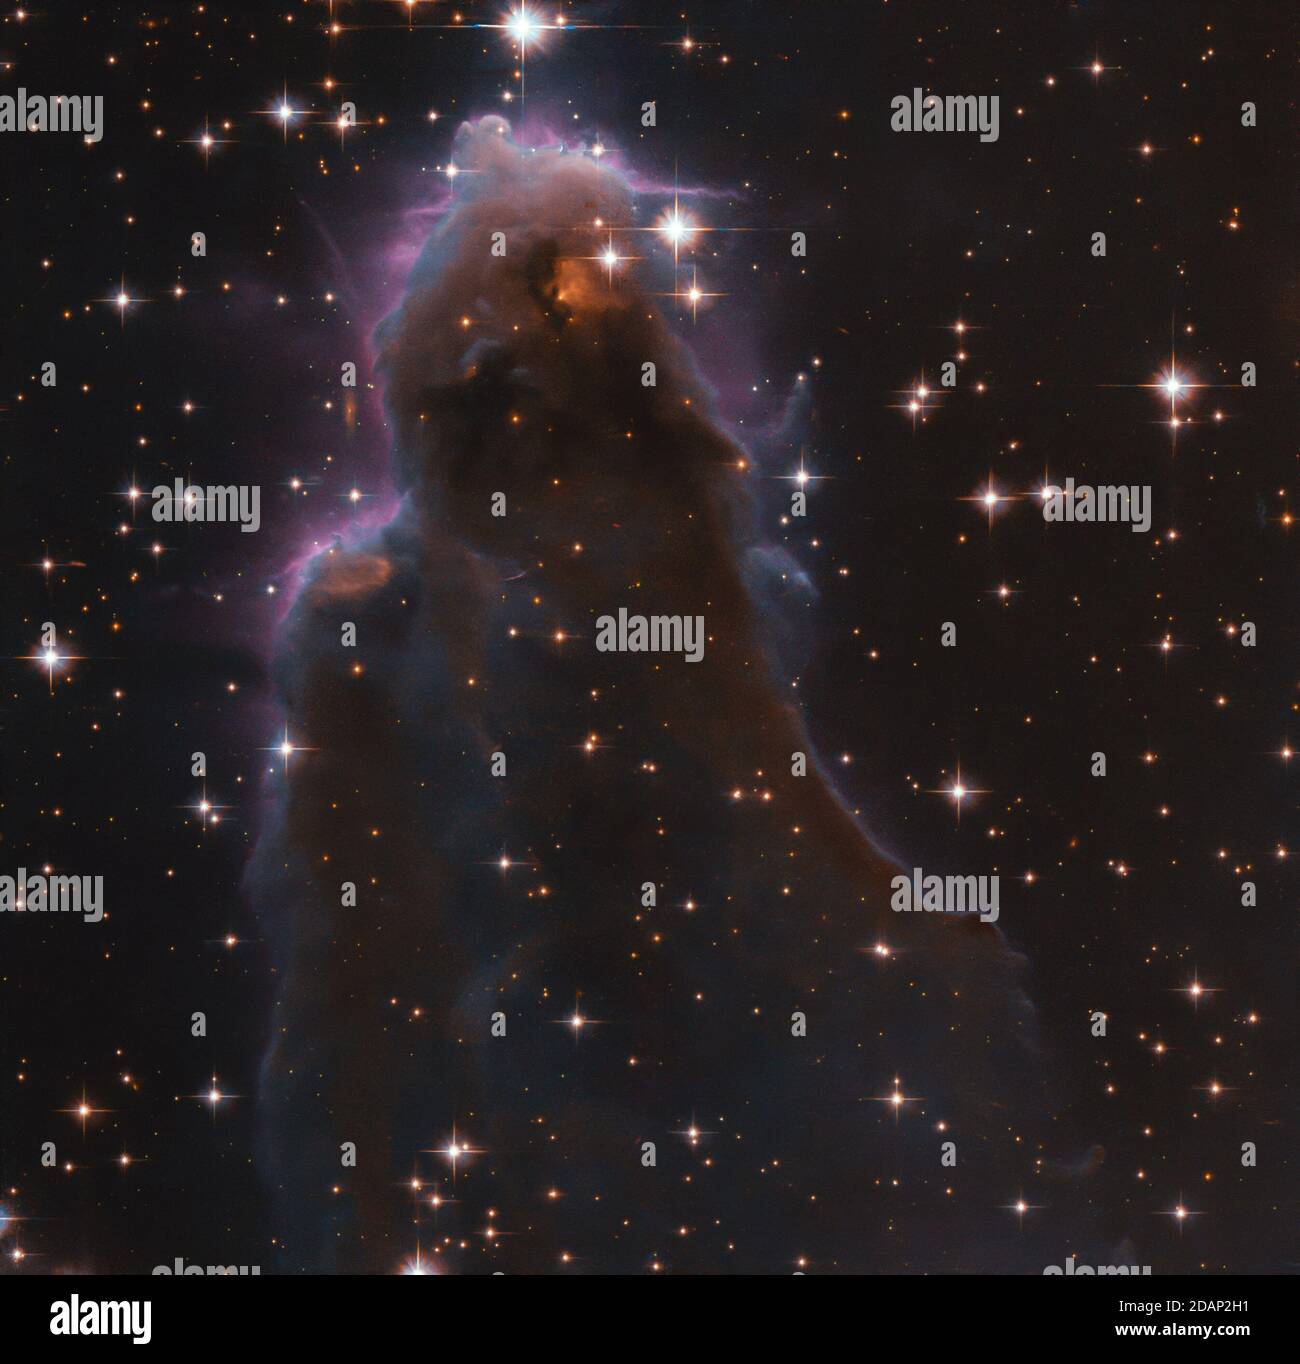 Esta imagen, tomada con el Telescopio Espacial Hubble de la NASA/esa, representa una clase especial de vivero formado por estrellas conocido como gaseoso evaporante flotante libre Foto de stock